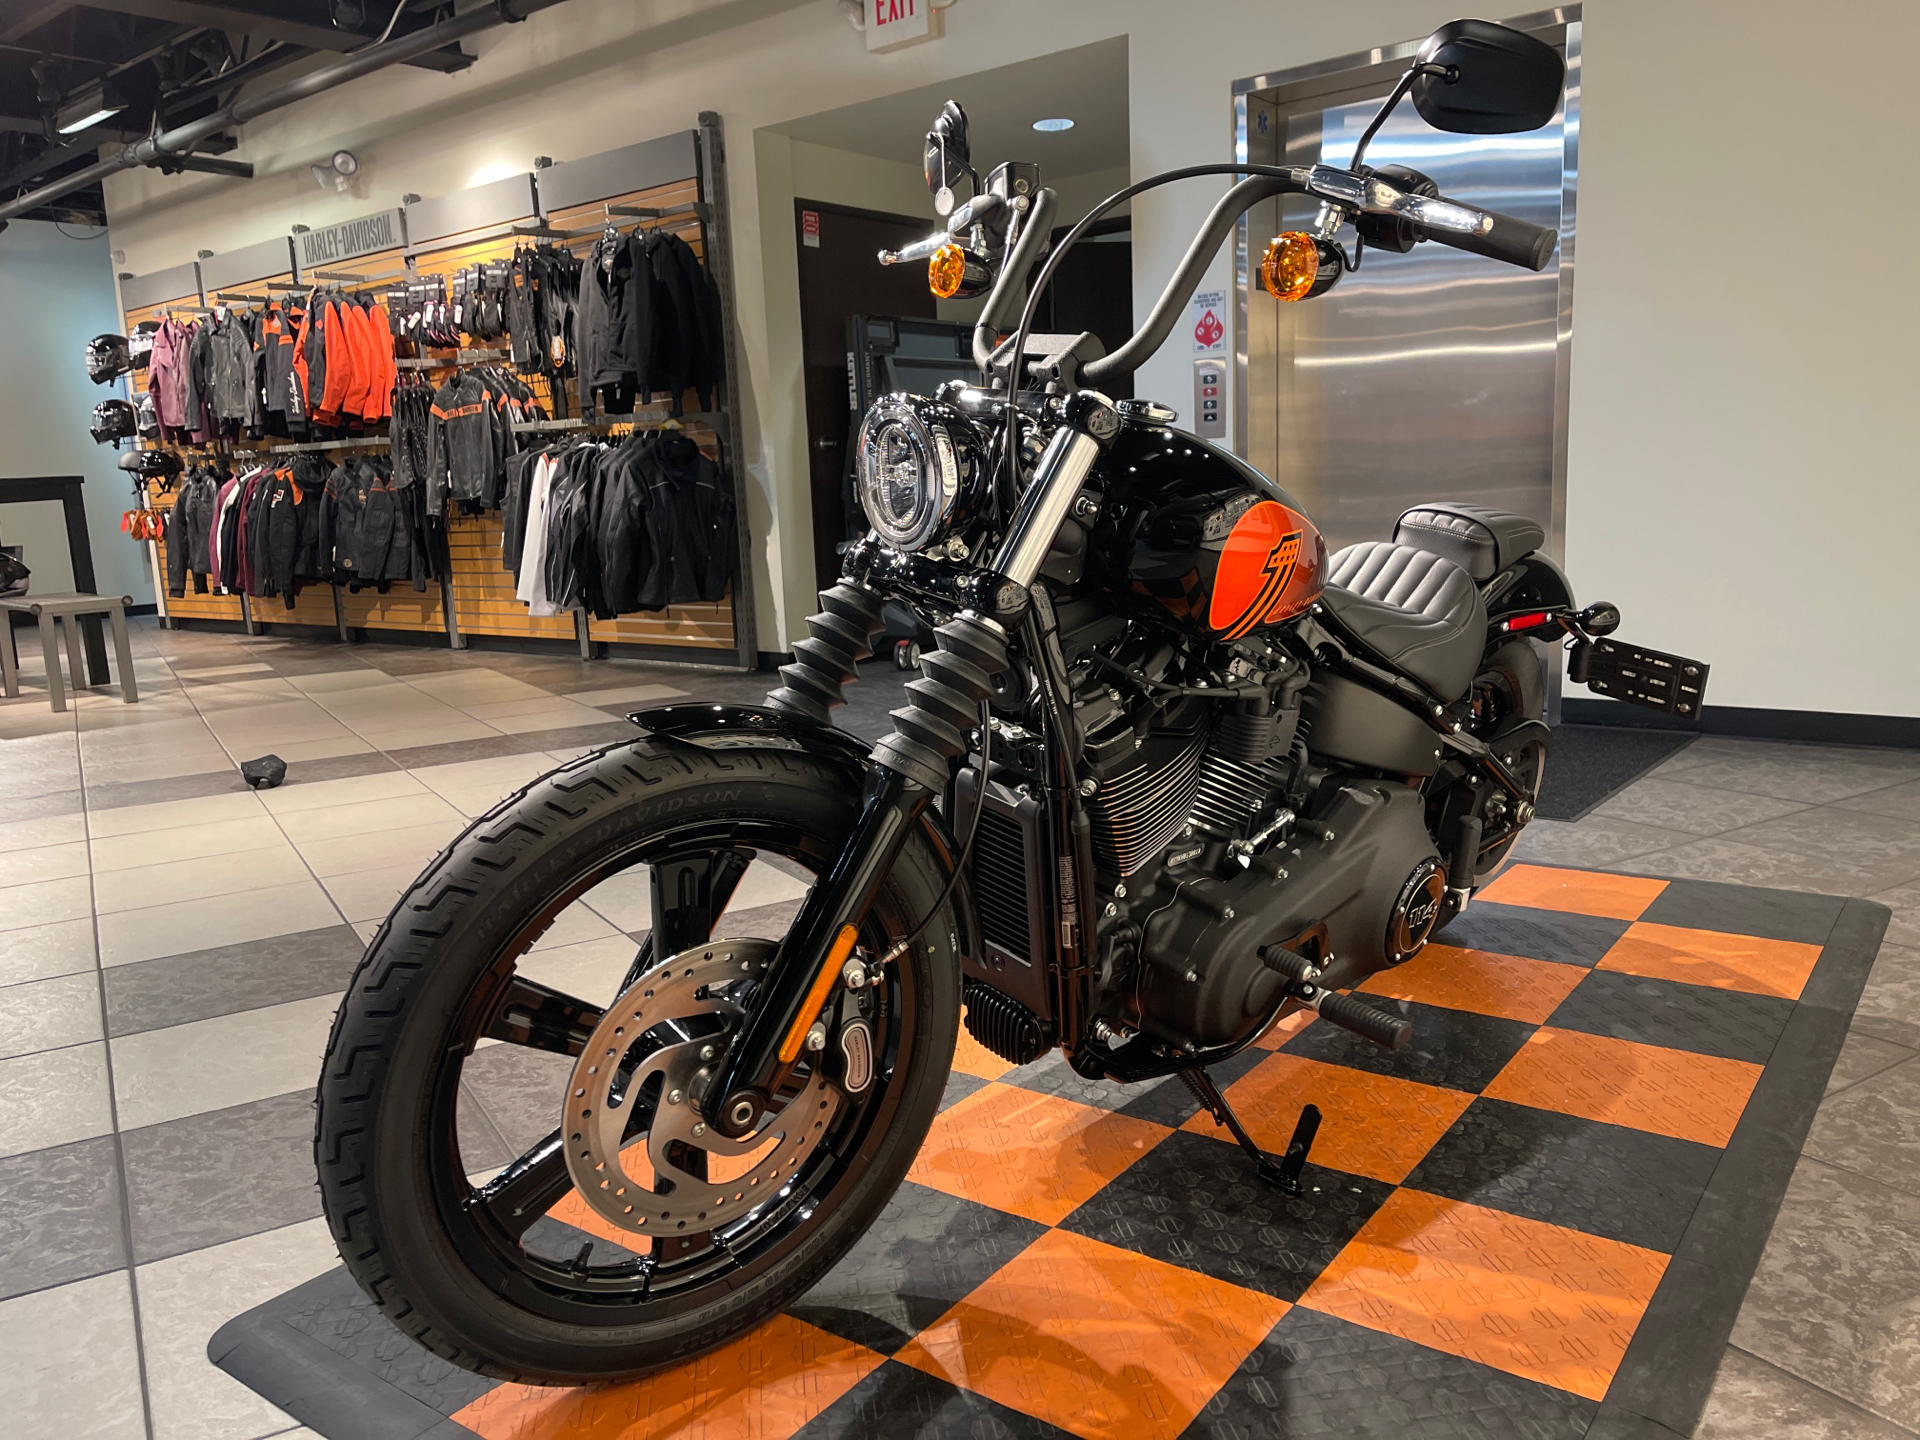 2022 Harley-Davidson Street Bob® 114 in Baldwin Park, California - Photo 10